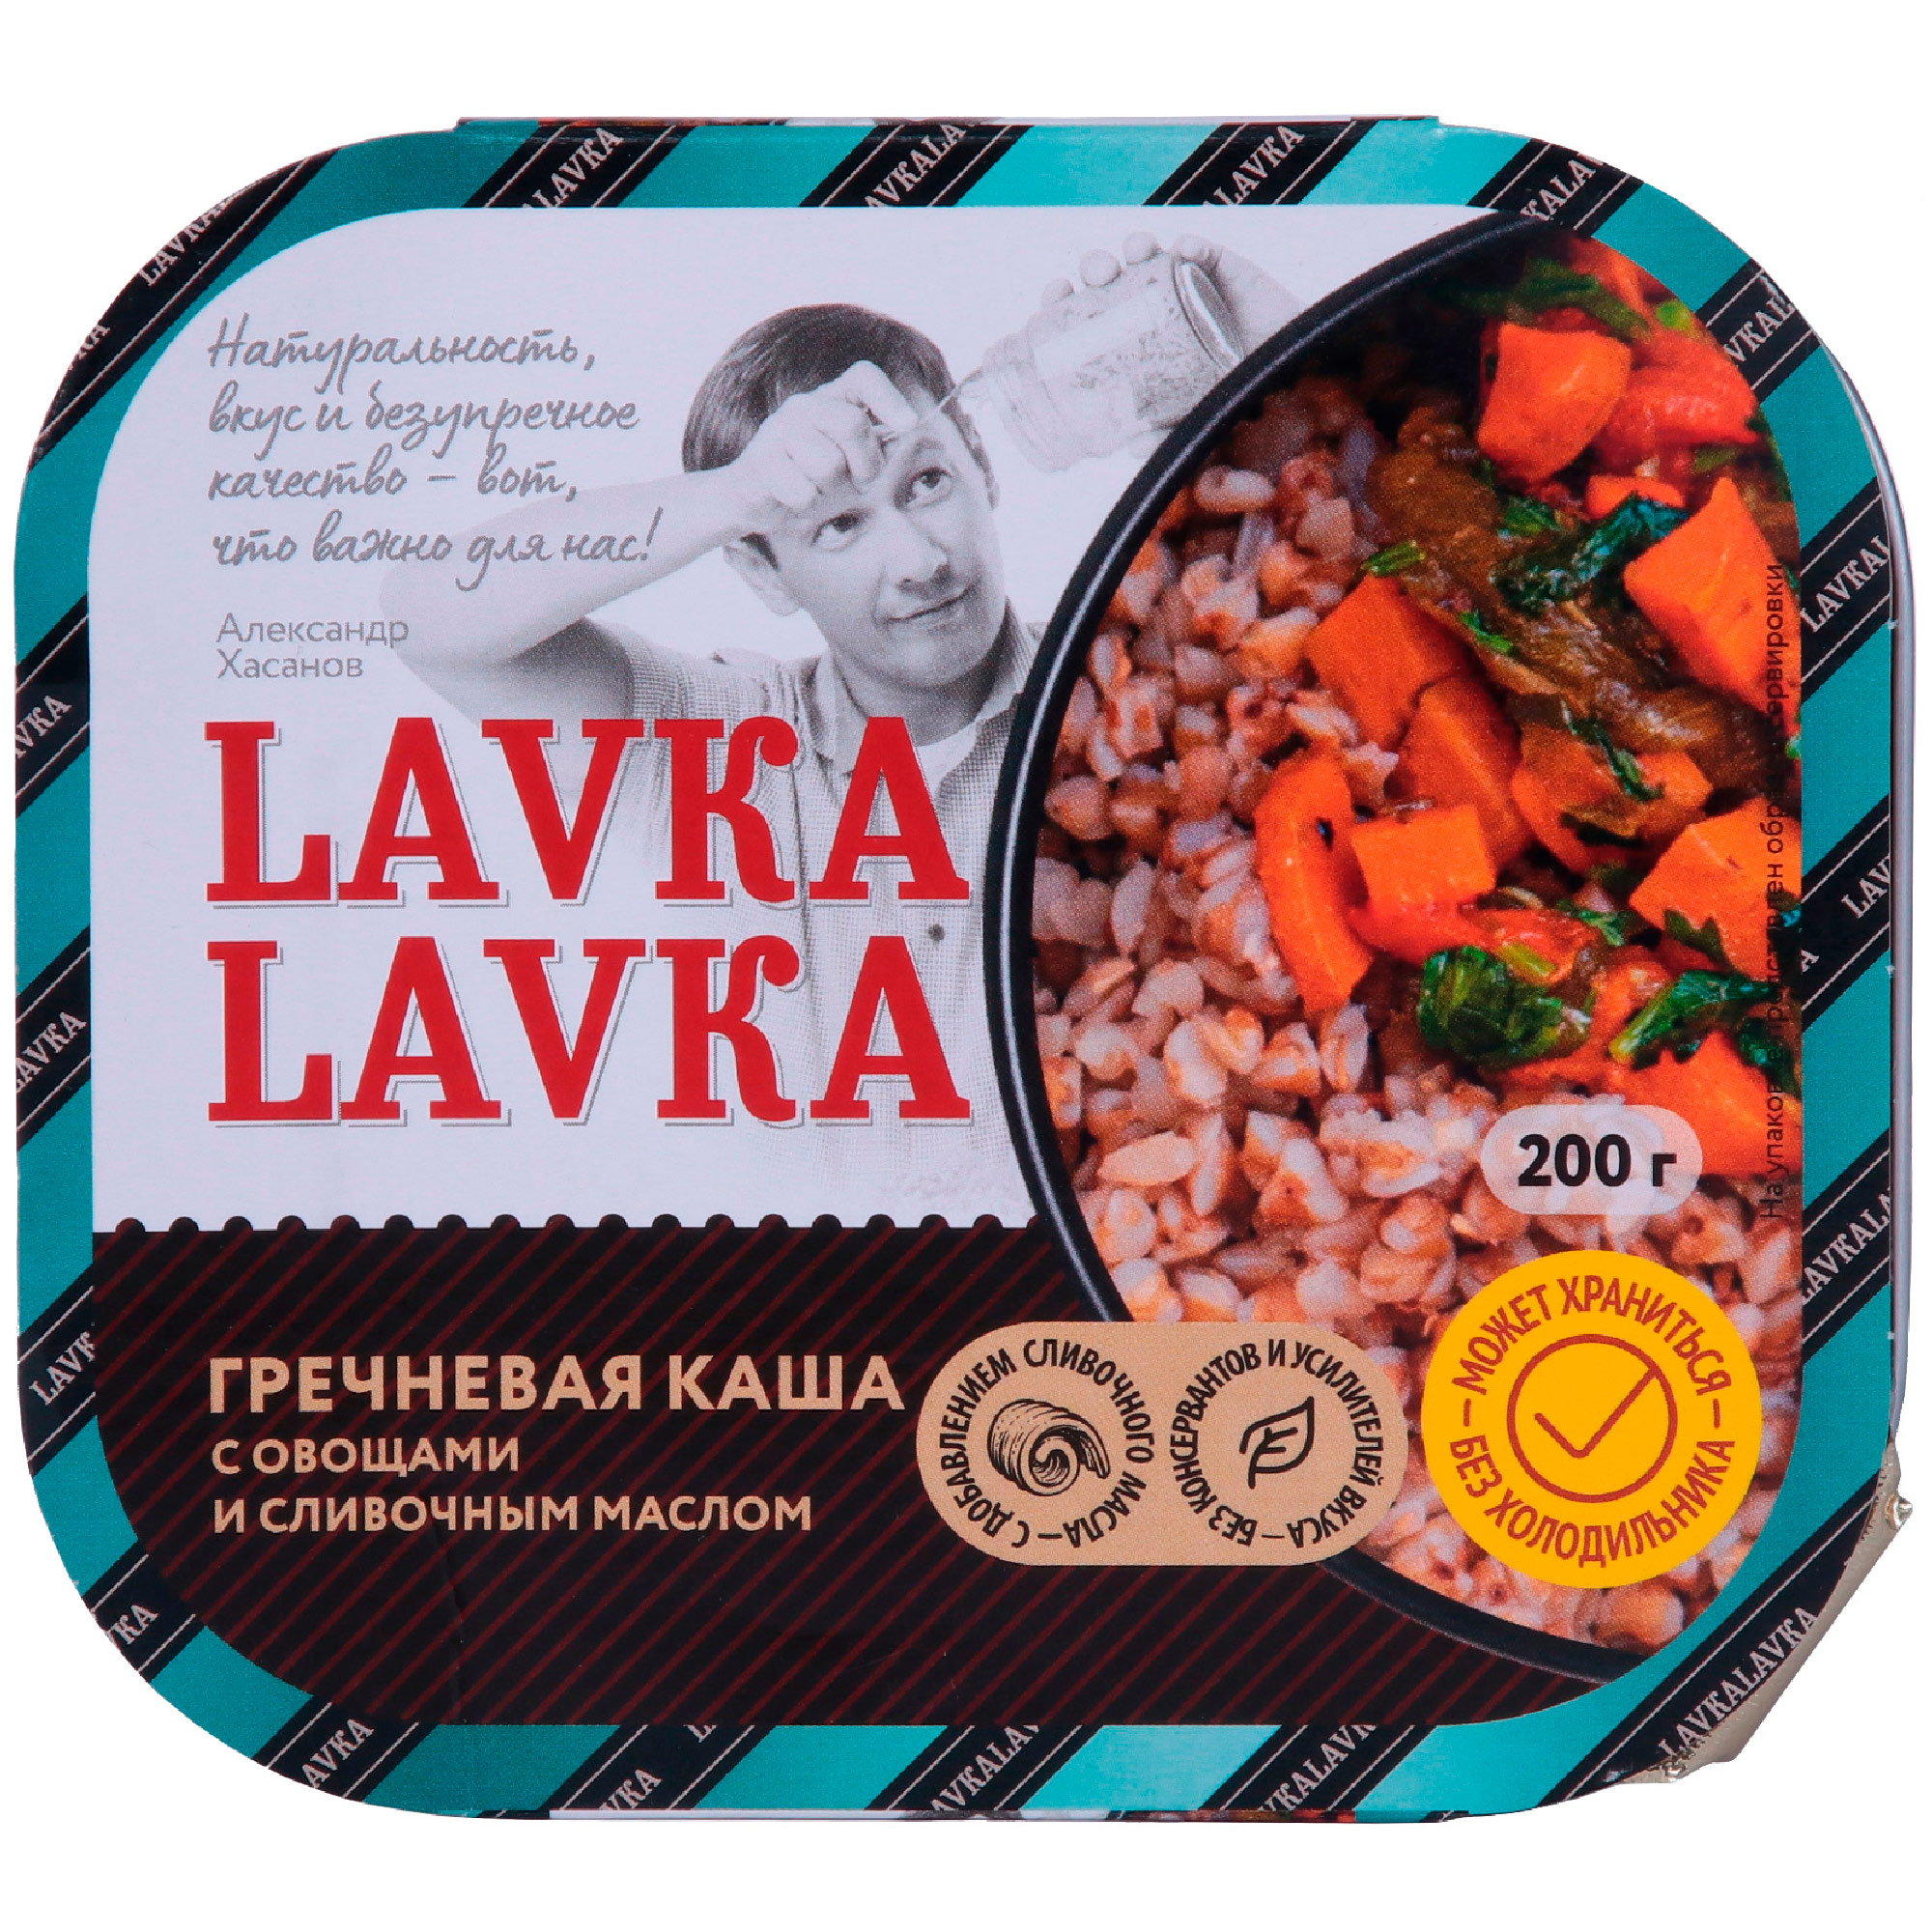 Каша гречневая LavkaLavka с овощами и сливочным маслом, 200 г миндаль жареный кг